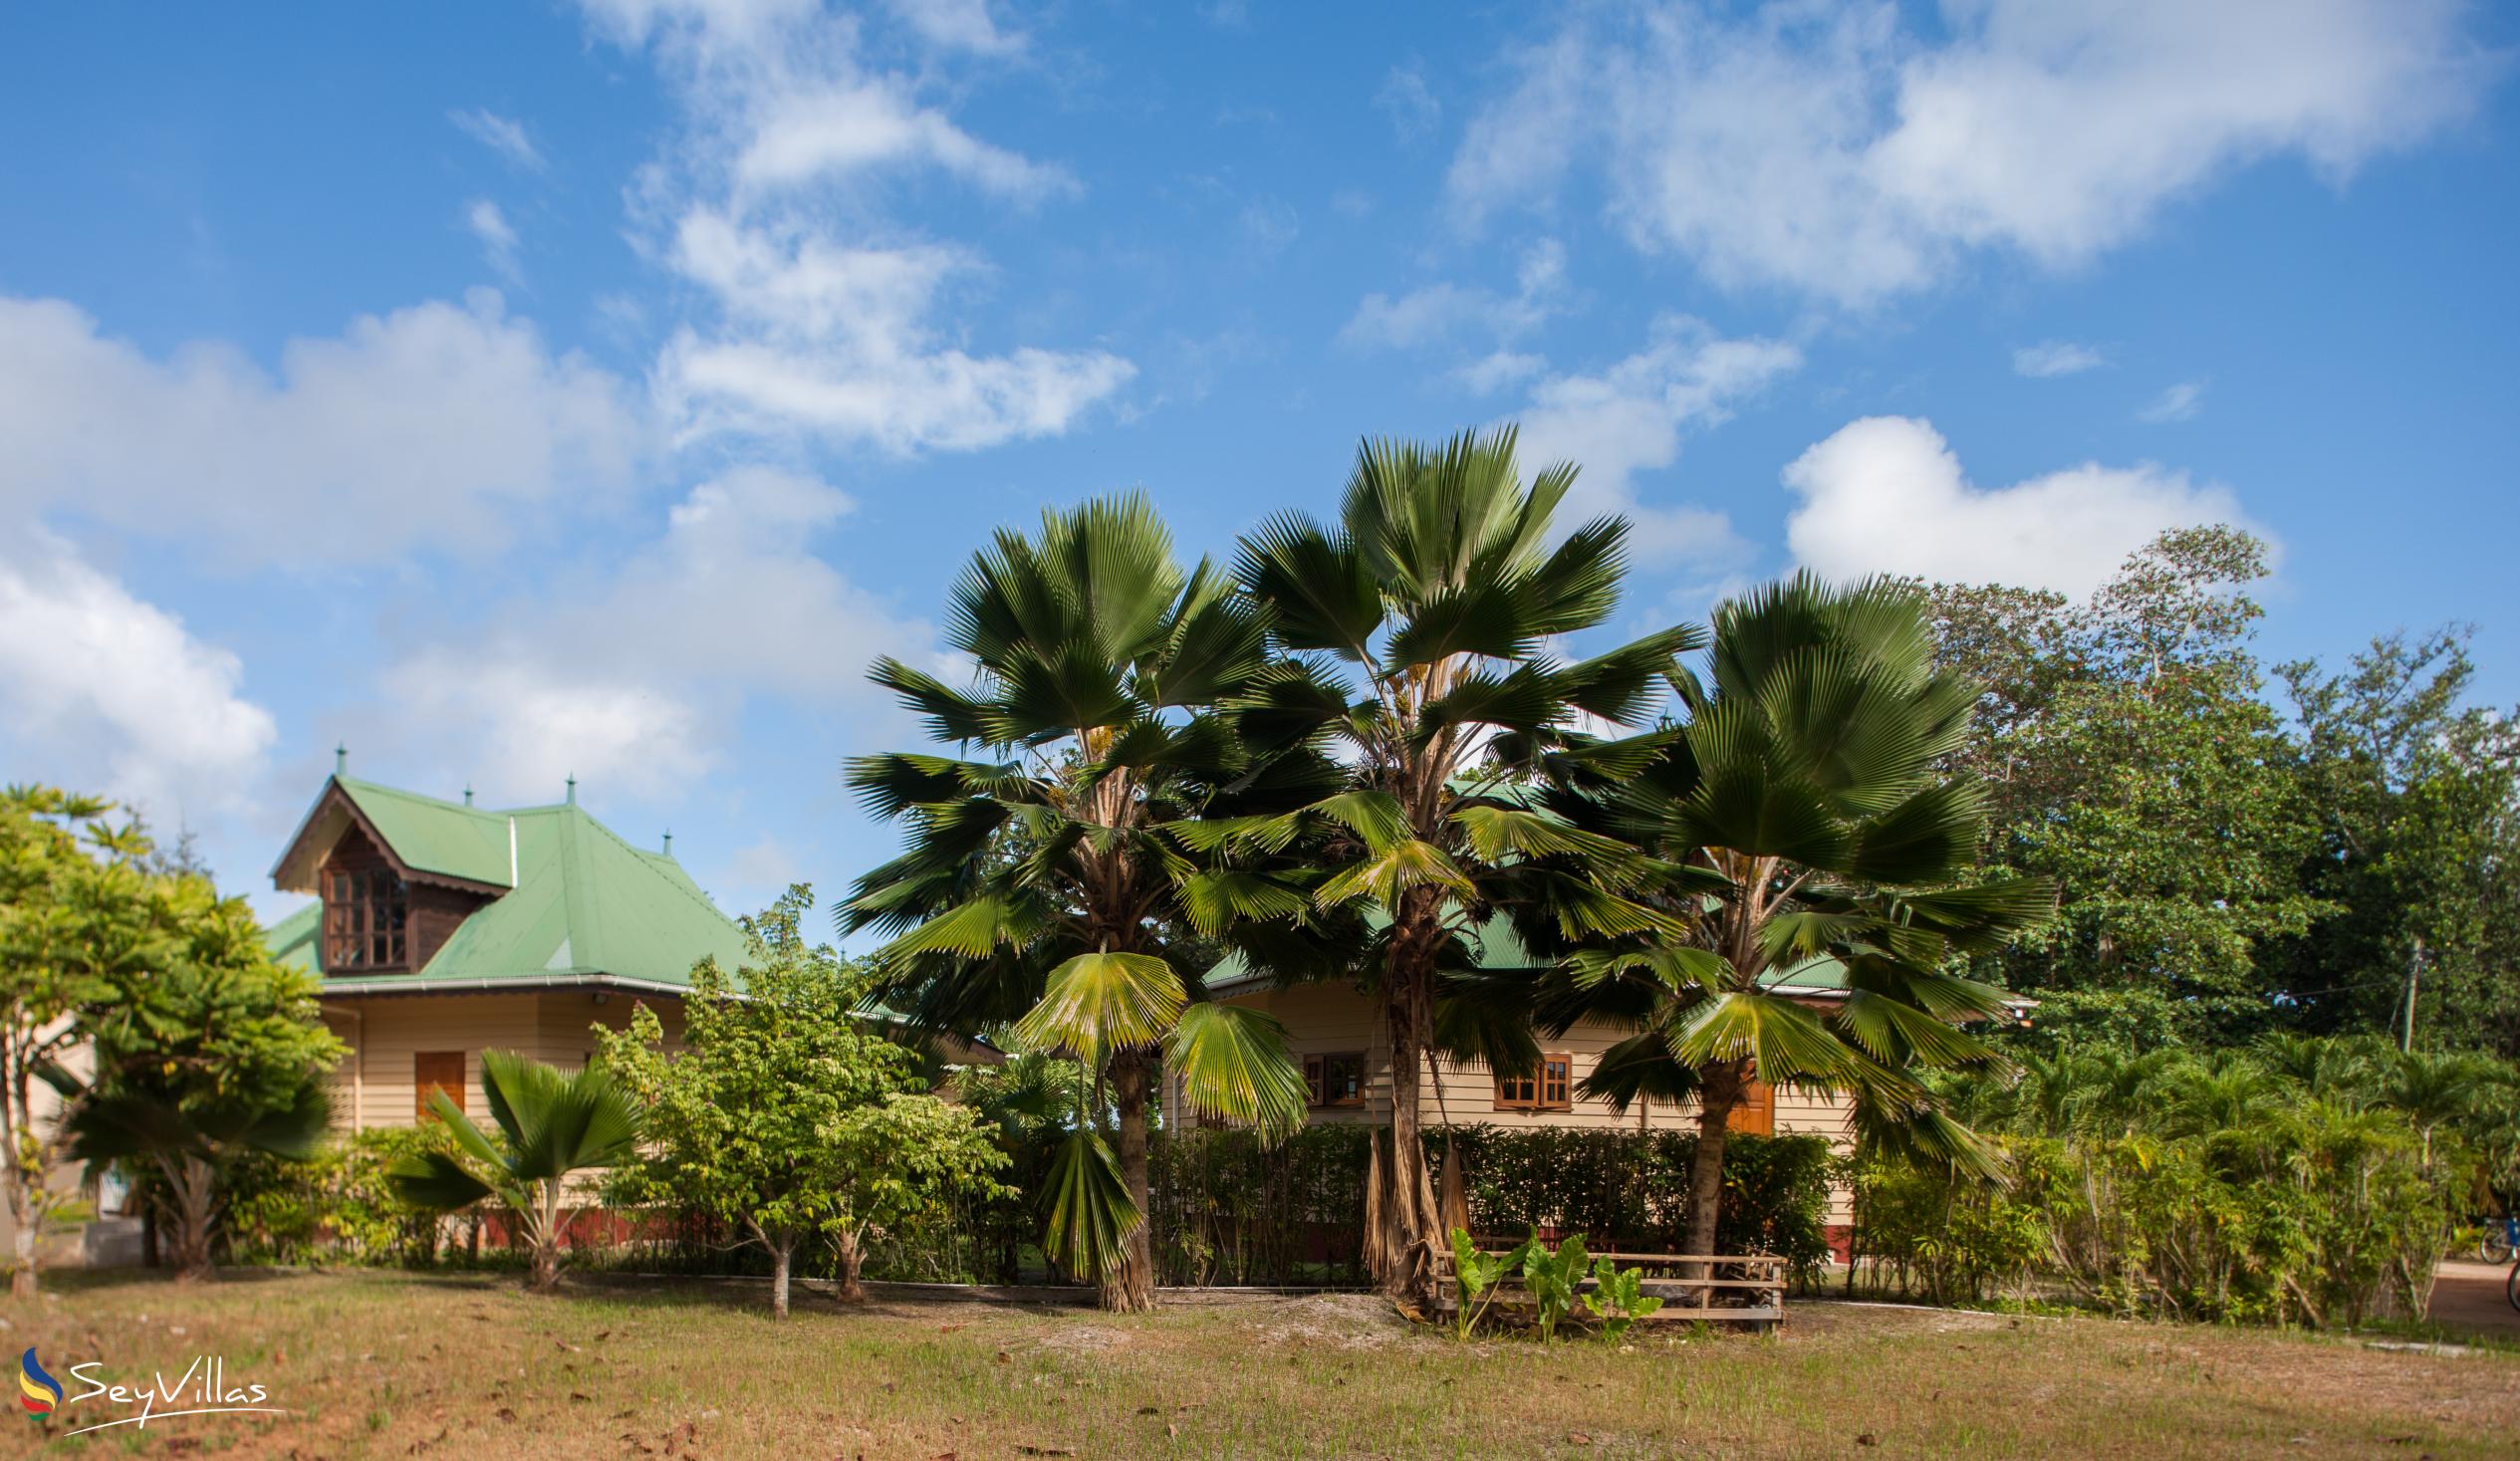 Photo 13: Villa Creole - Outdoor area - La Digue (Seychelles)